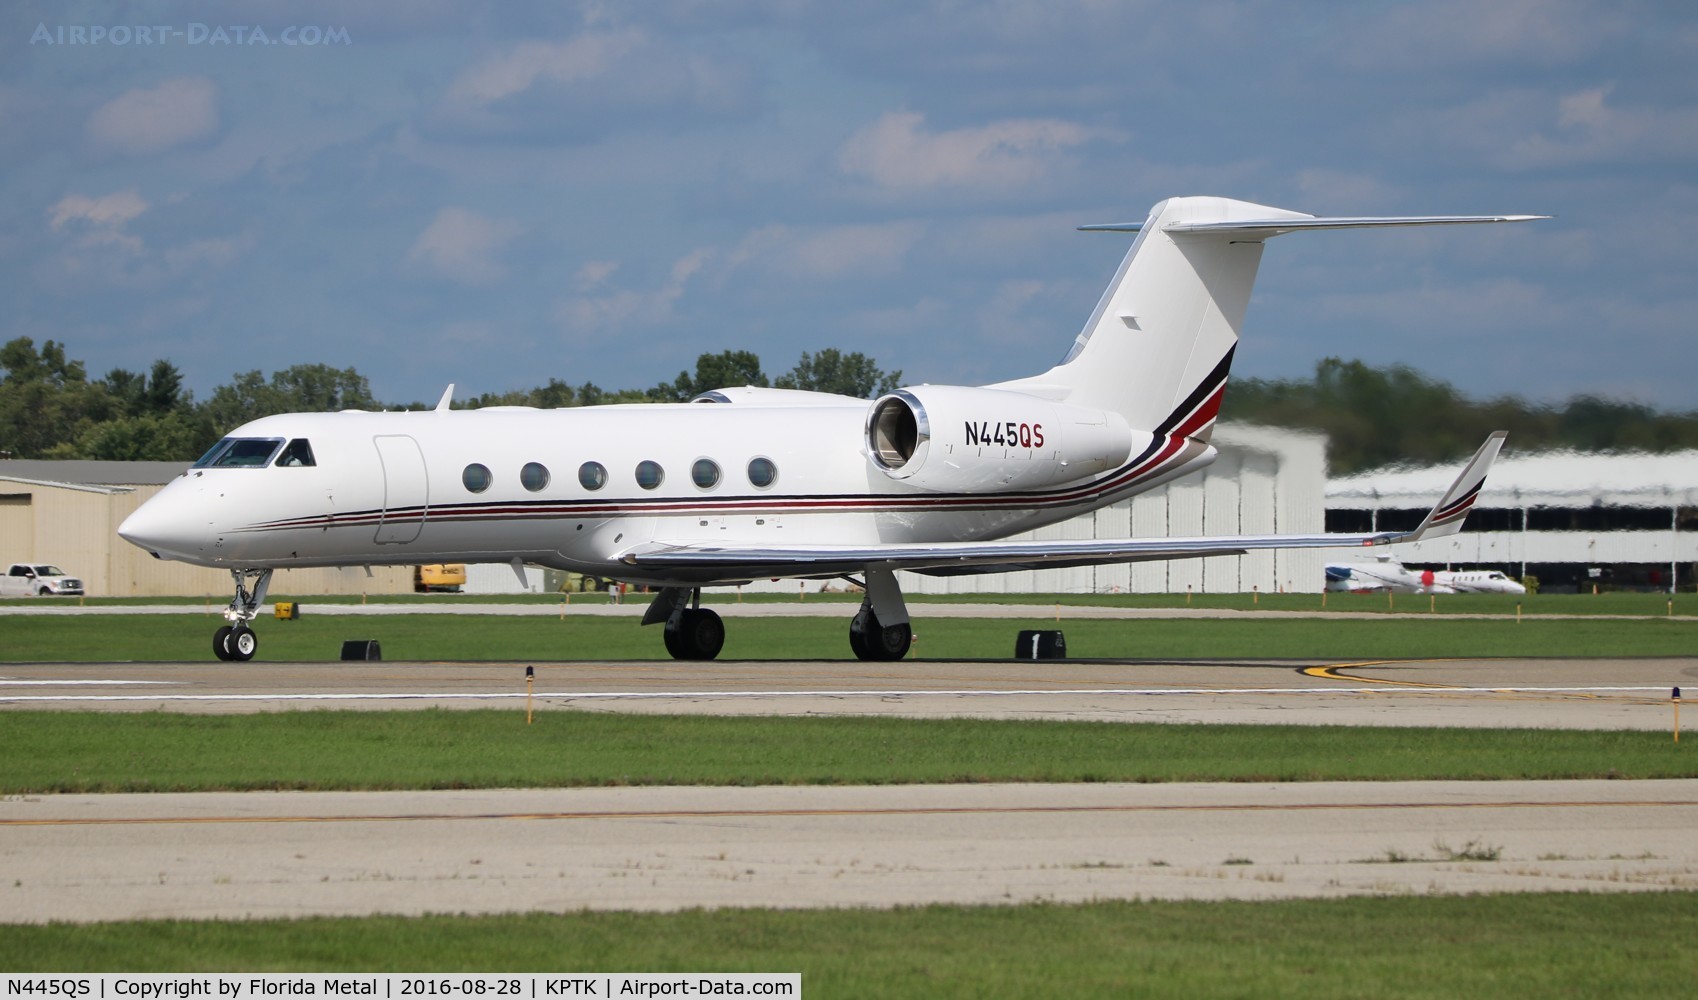 N445QS, 2006 Gulfstream Aerospace GIV-X (G450) C/N 4037, G450 zx